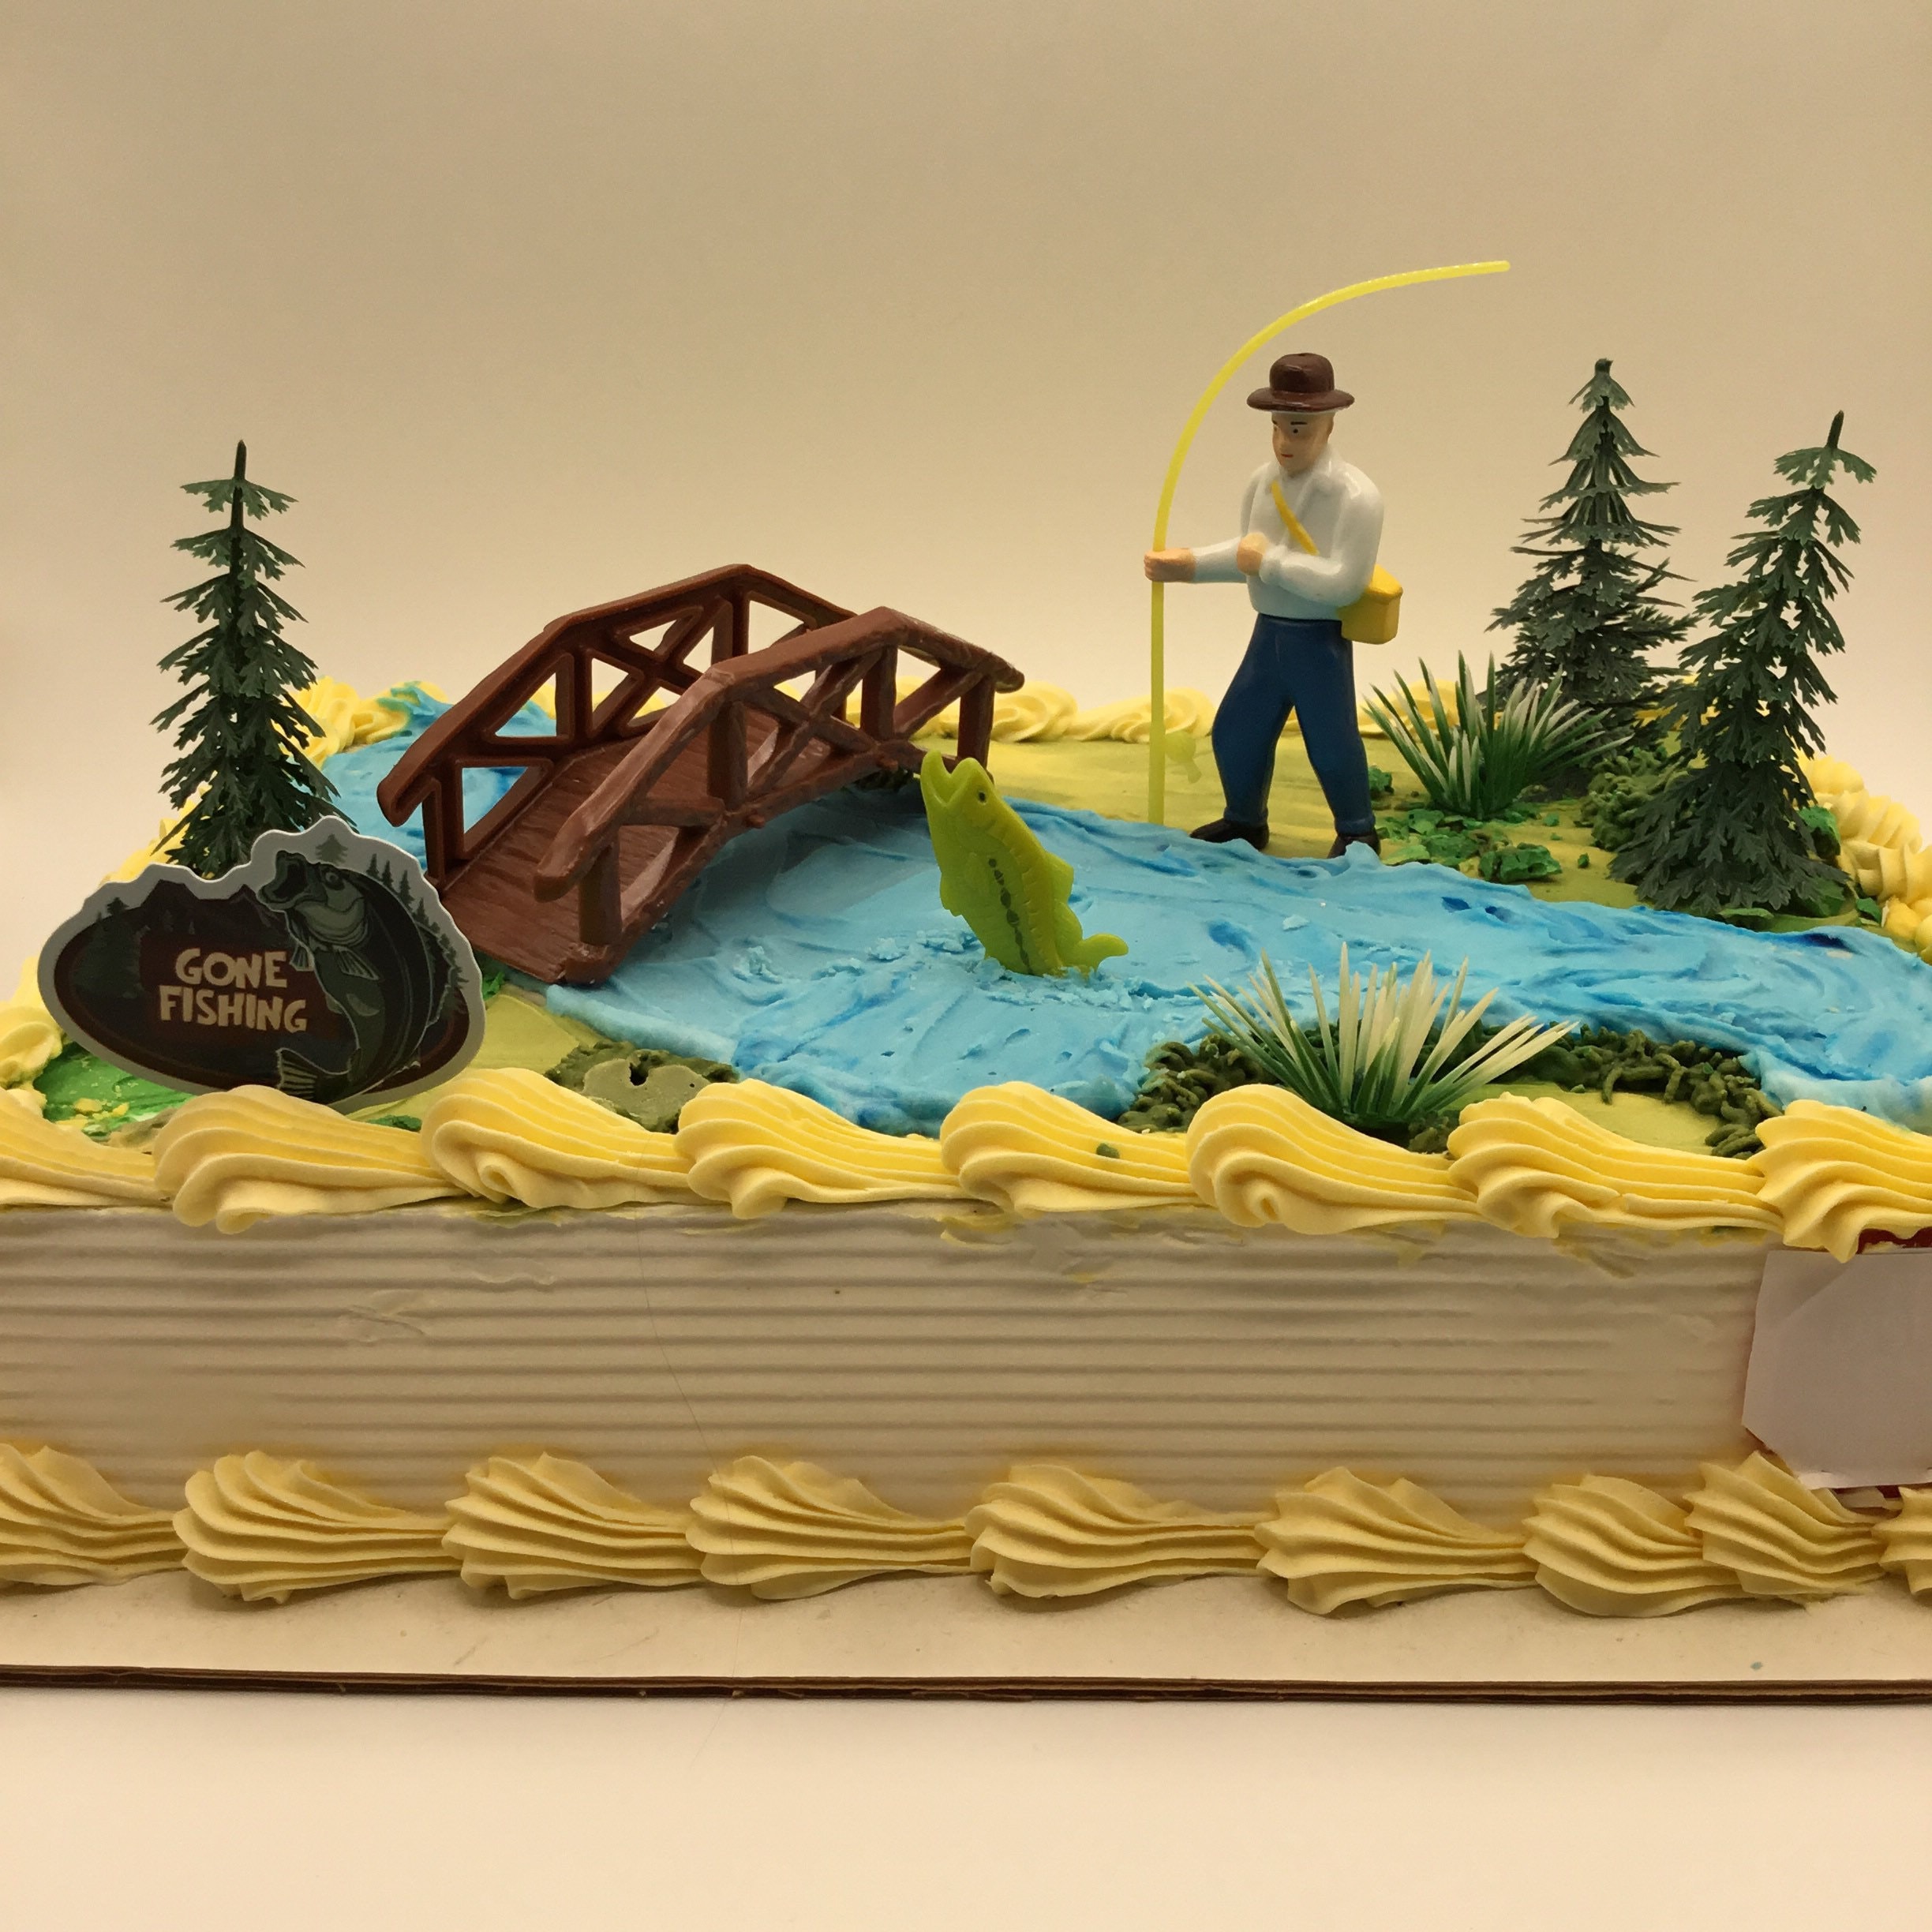 Gone Fishing Cake Kit / Fishermans Birthday Cake Kit / DIY